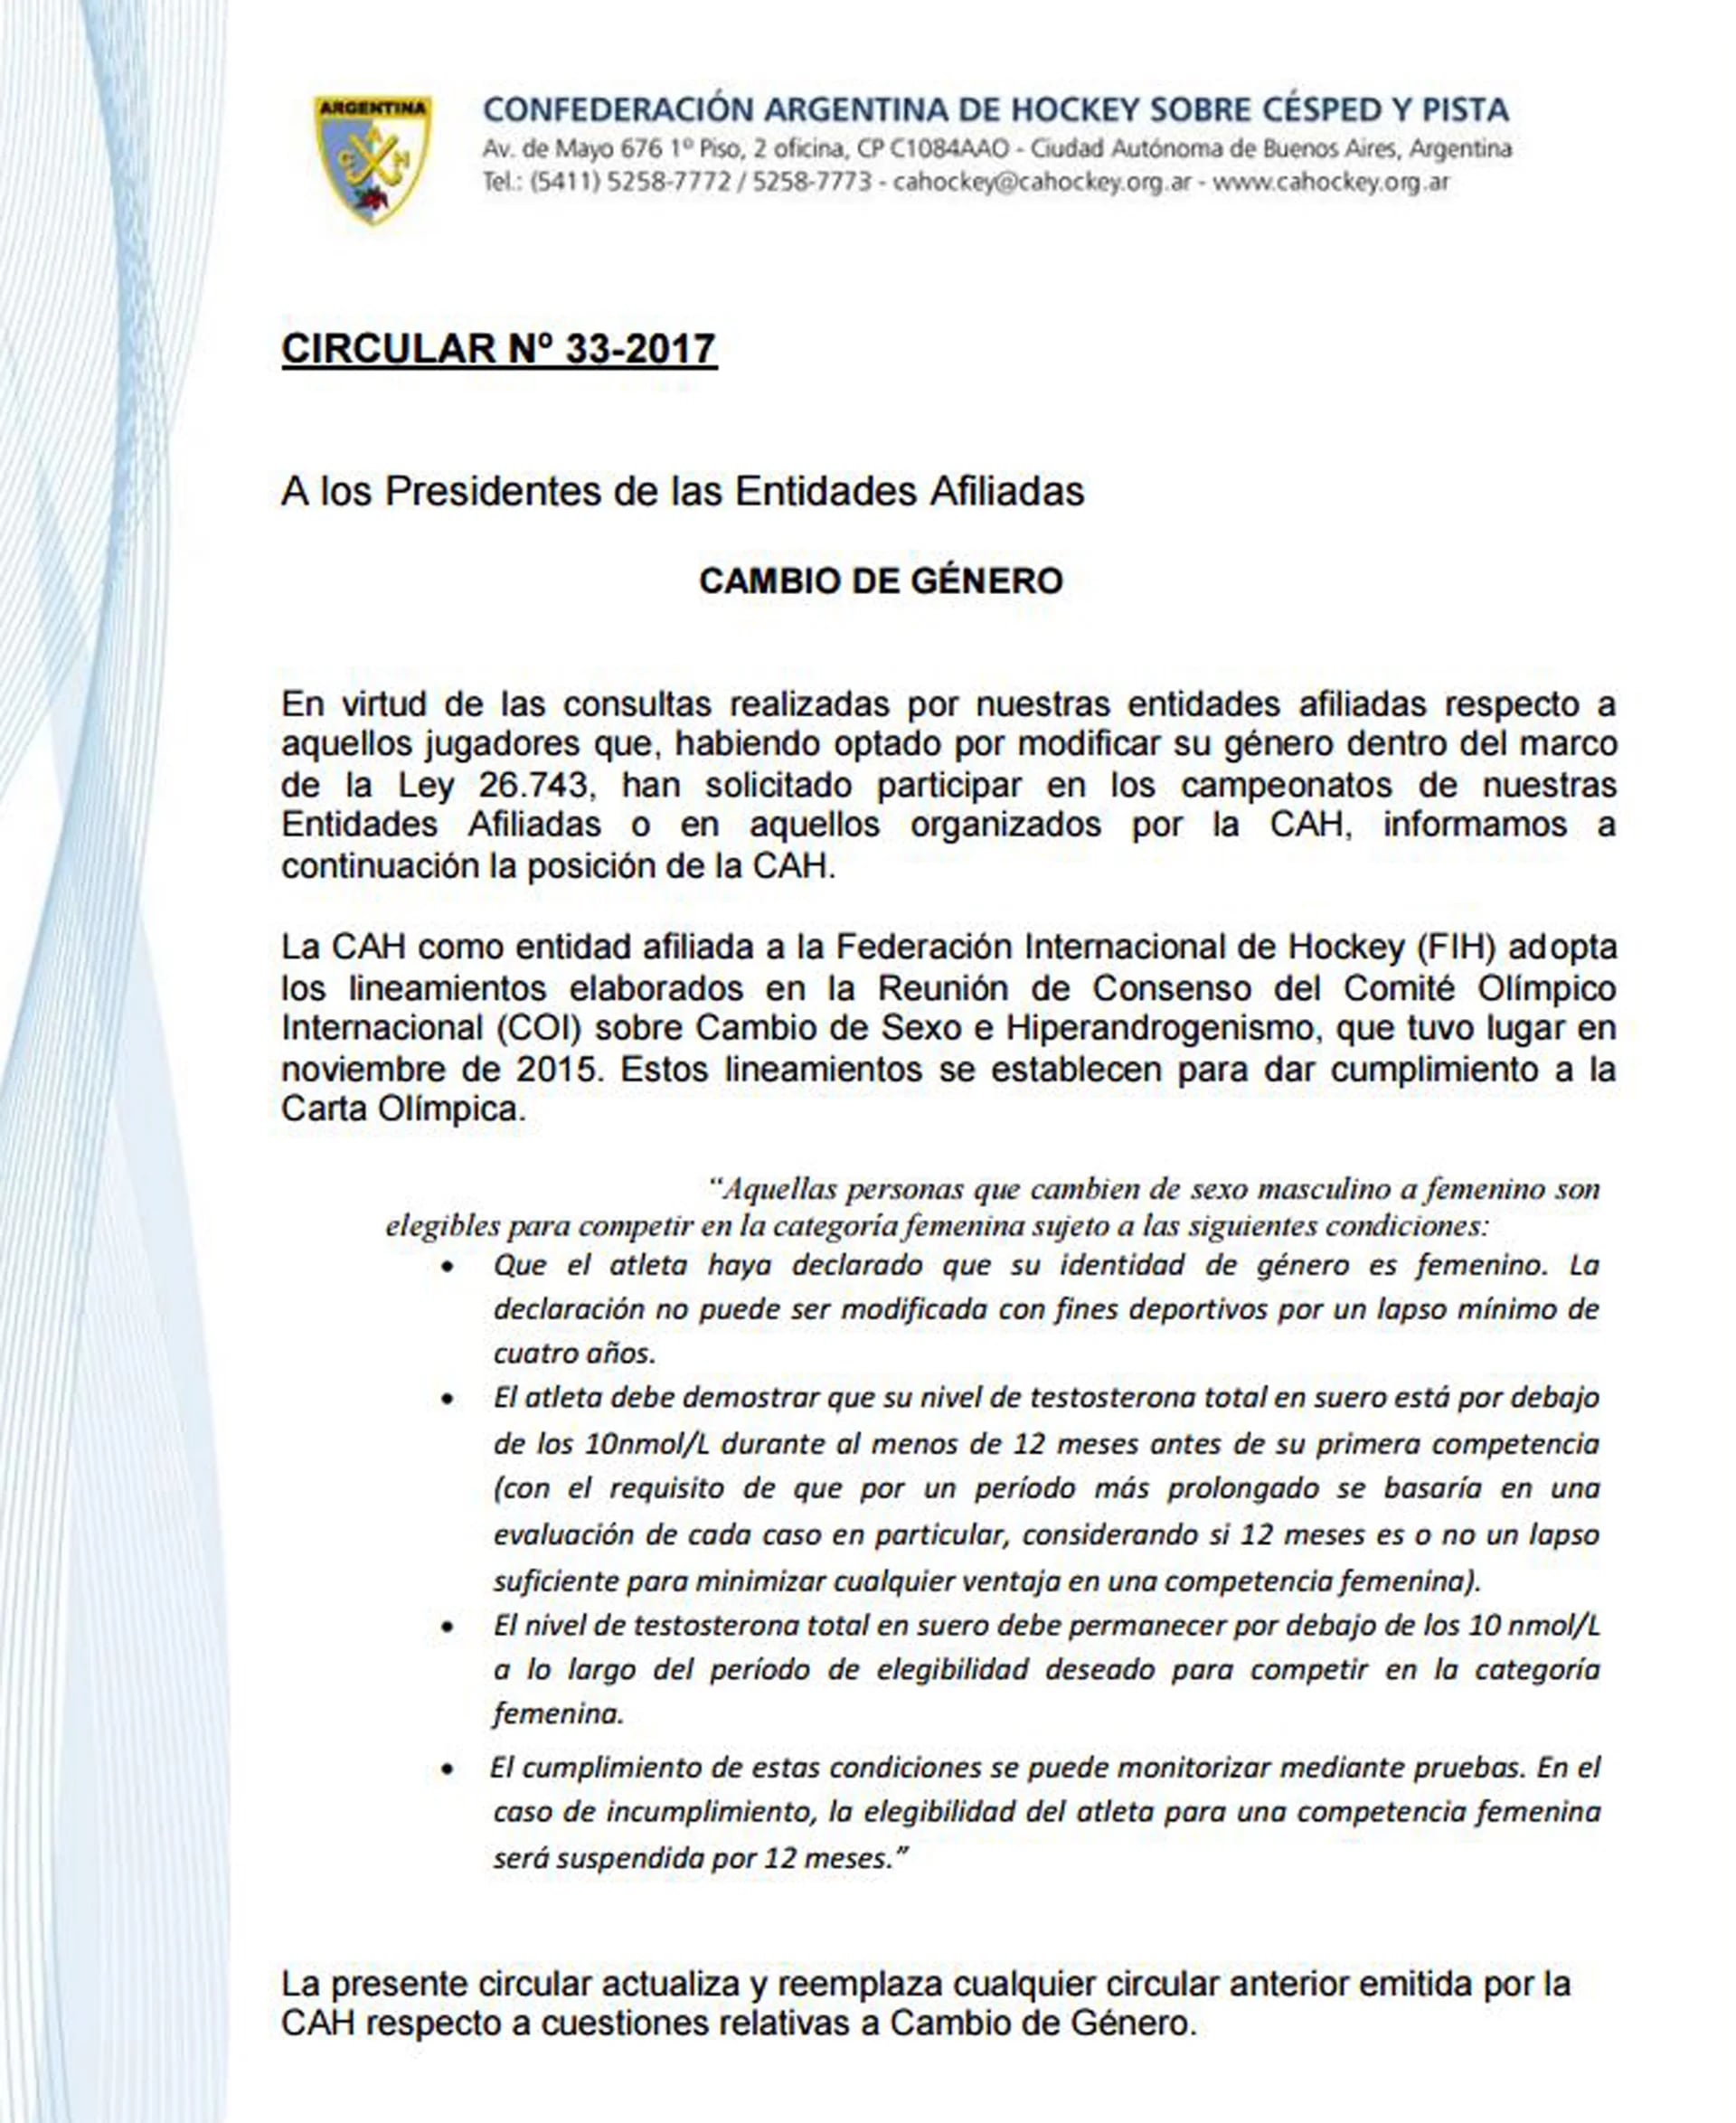 La circular nº 33-2017 de la Confederación Argentina de Hockey